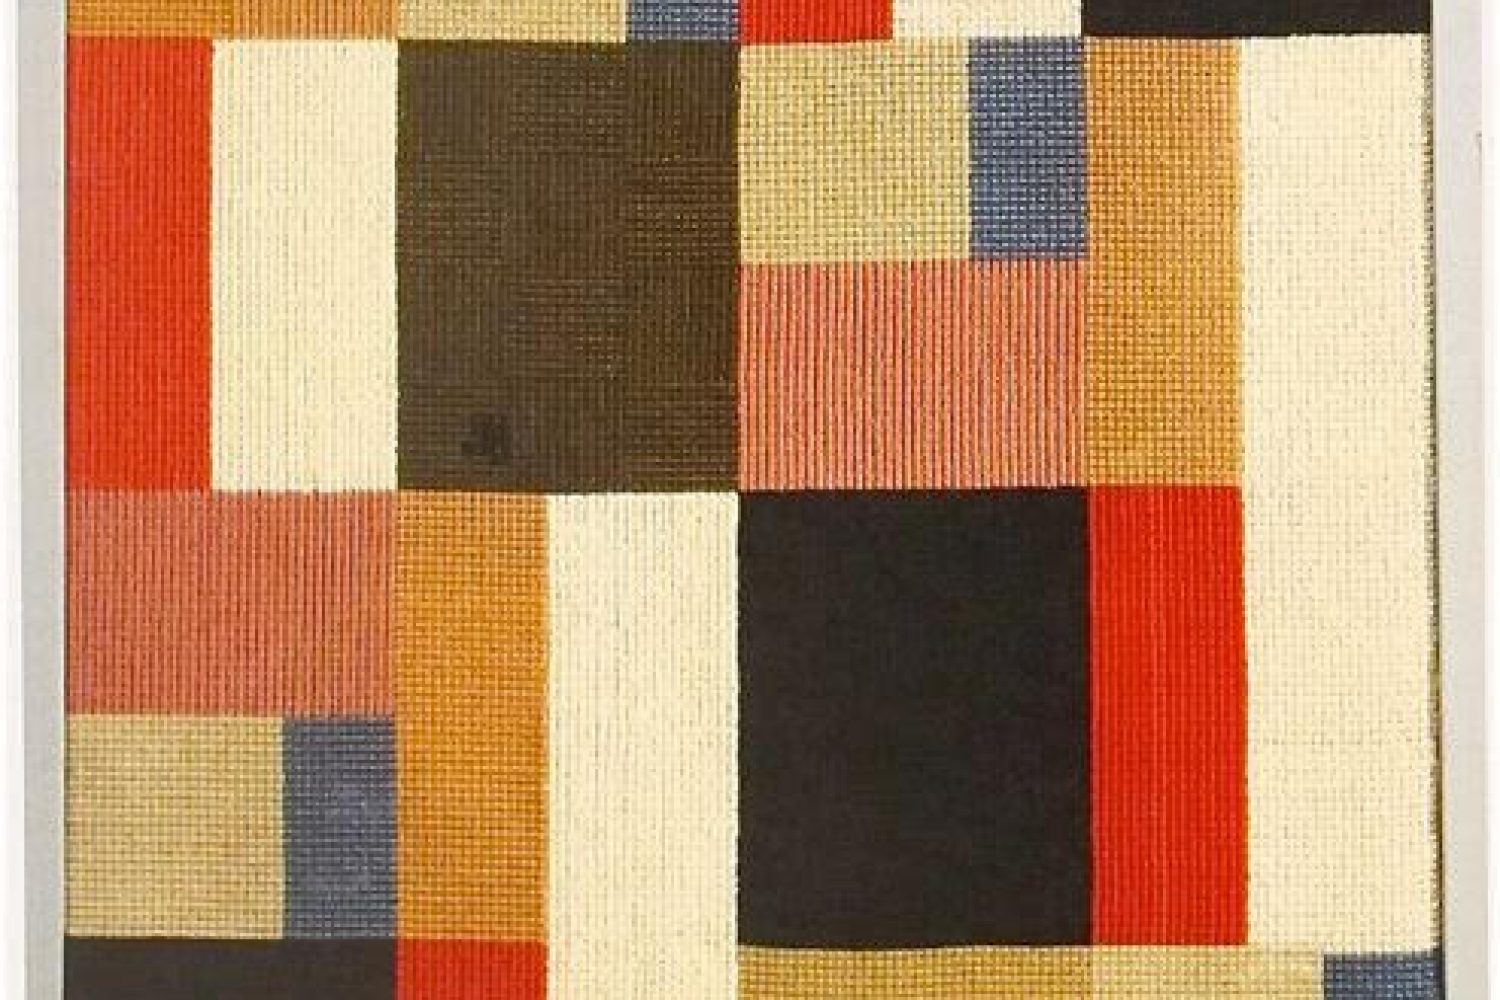 Composition verticale-horizontale (1916), Sophie Taeuber-Arp, née en 1889 à Davos, décédée à Zurich en 1943. (Source Wikipédia)